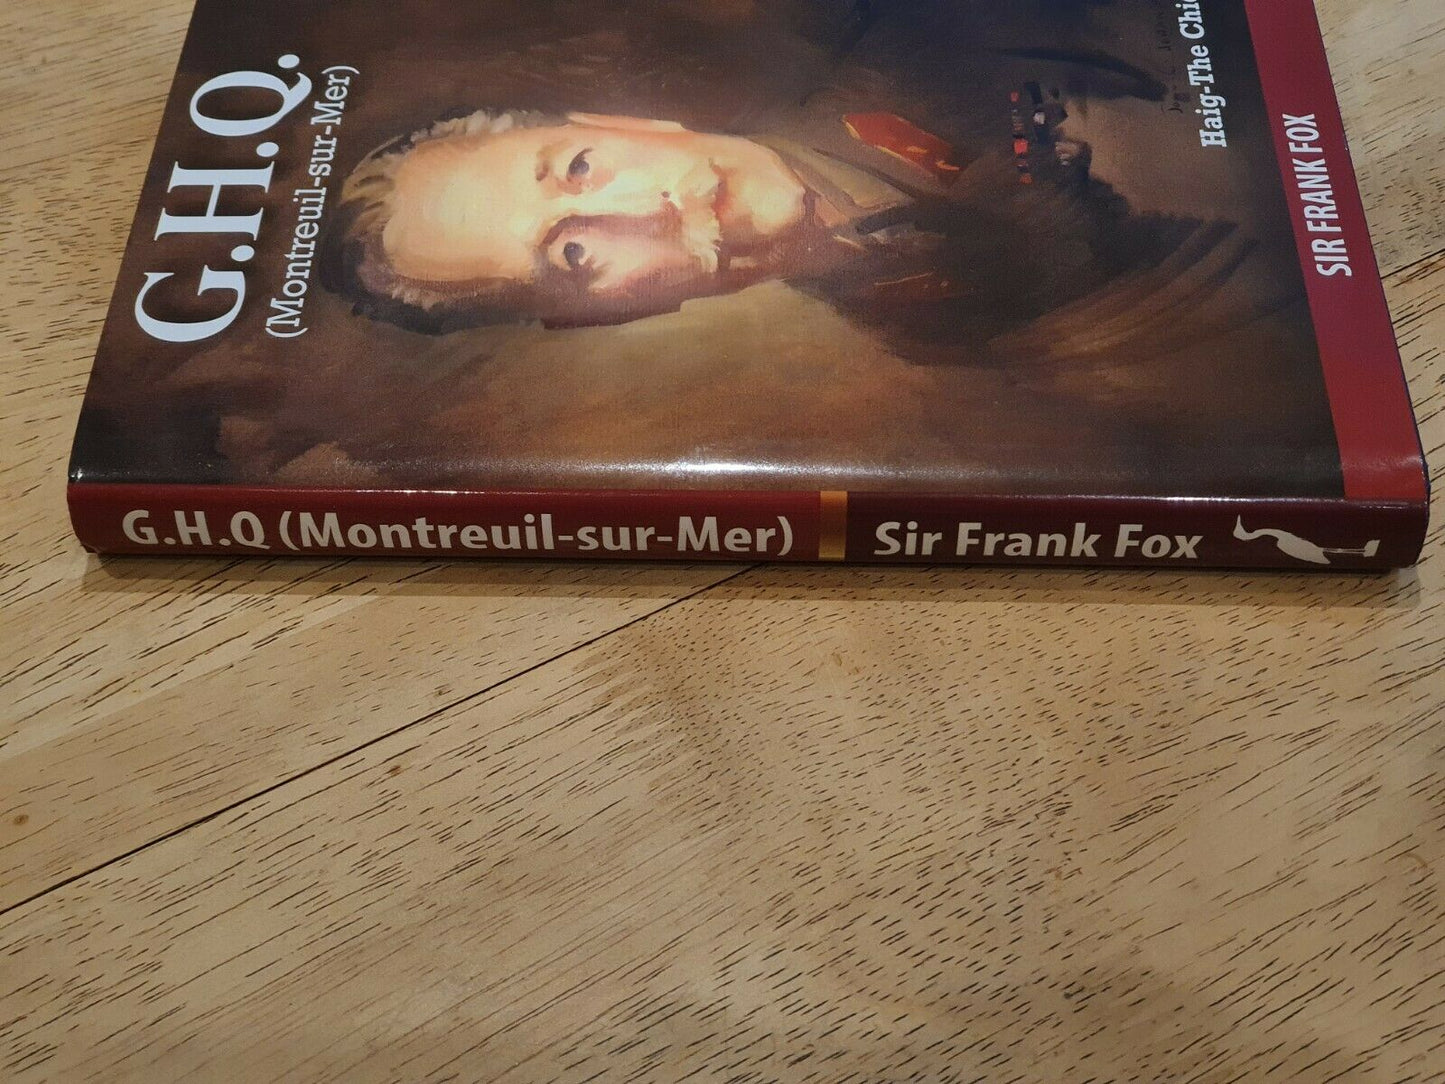 G.H.Q. (Montreuil-Sur-Mer) Haig-The Chief by Sir Frank Fox